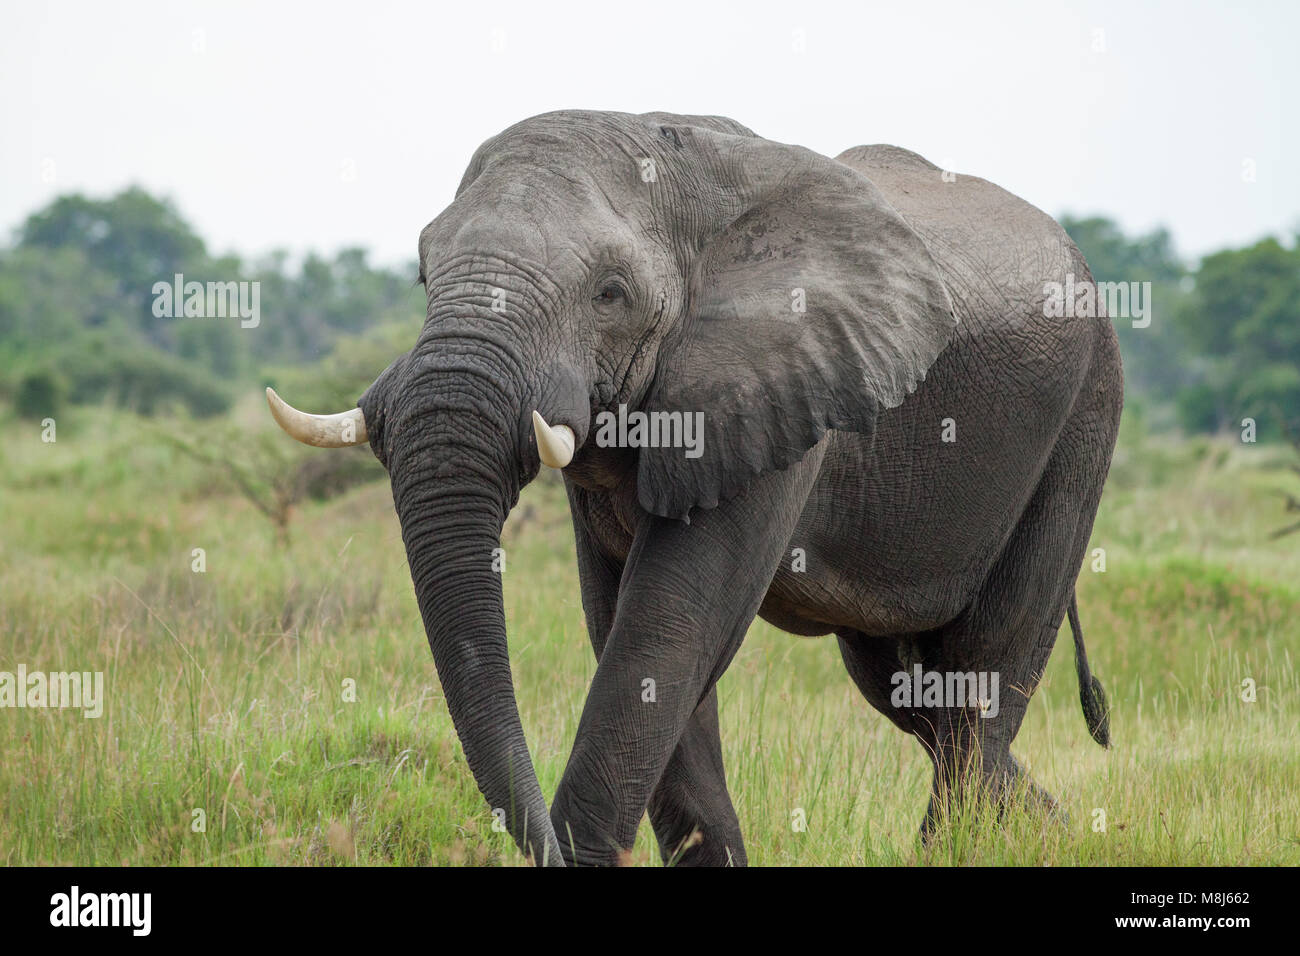 Afrikanischer Elefant Loxodonta Africana. Obwohl geschützt, noch Pochierte für Côte d'Ivoire Händler, eine Art der Erhaltung Sorge. Auch in Botswana geschützt. Stockfoto